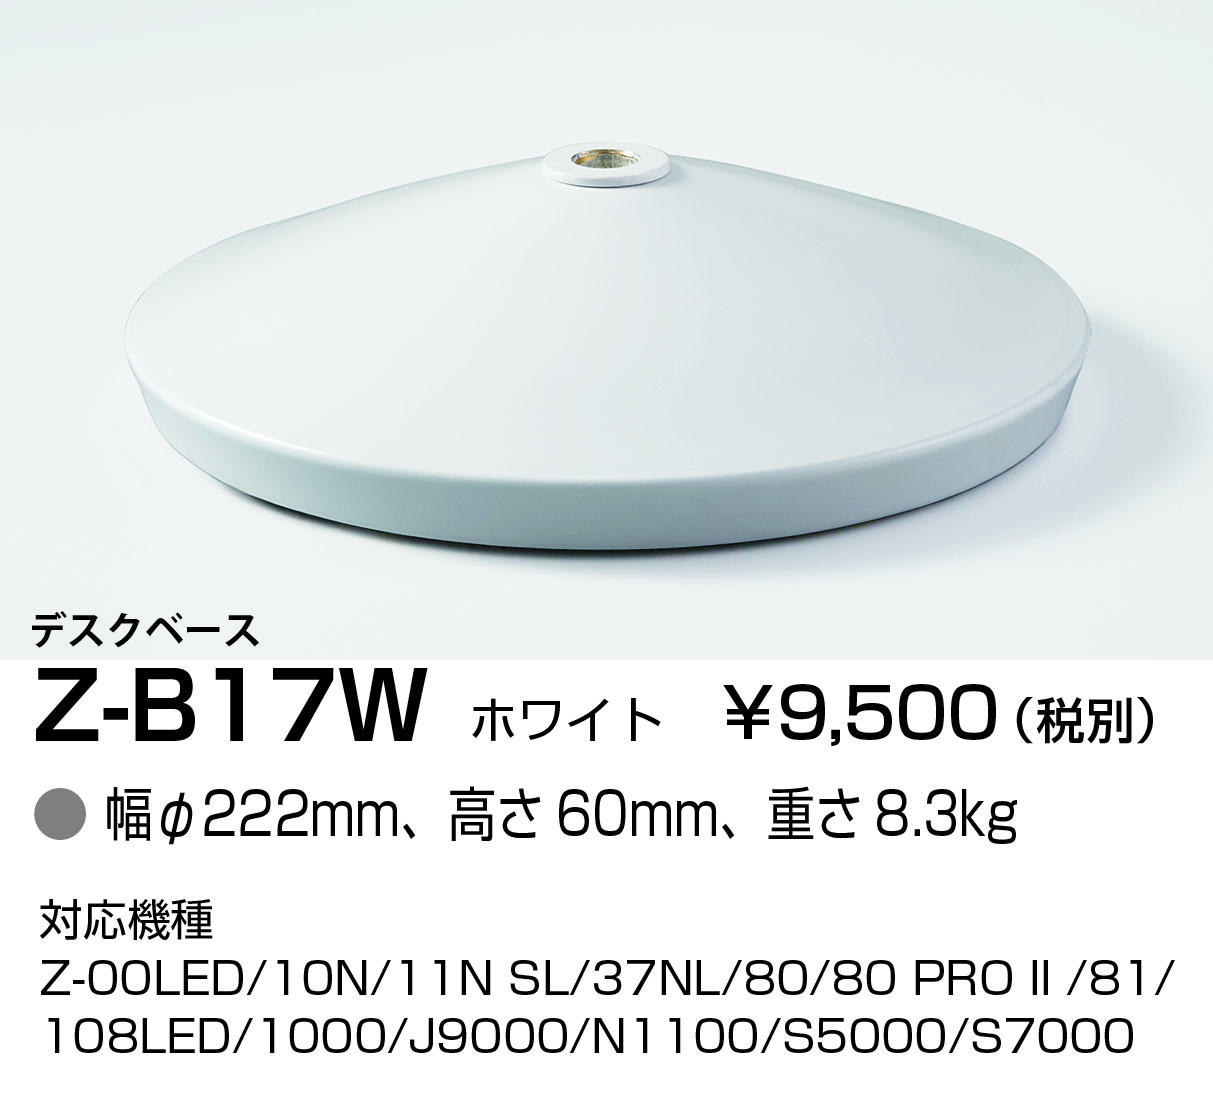 Z-B17W Z-Light（ゼットライト) 専用デスクベース ホワイト 山田照明